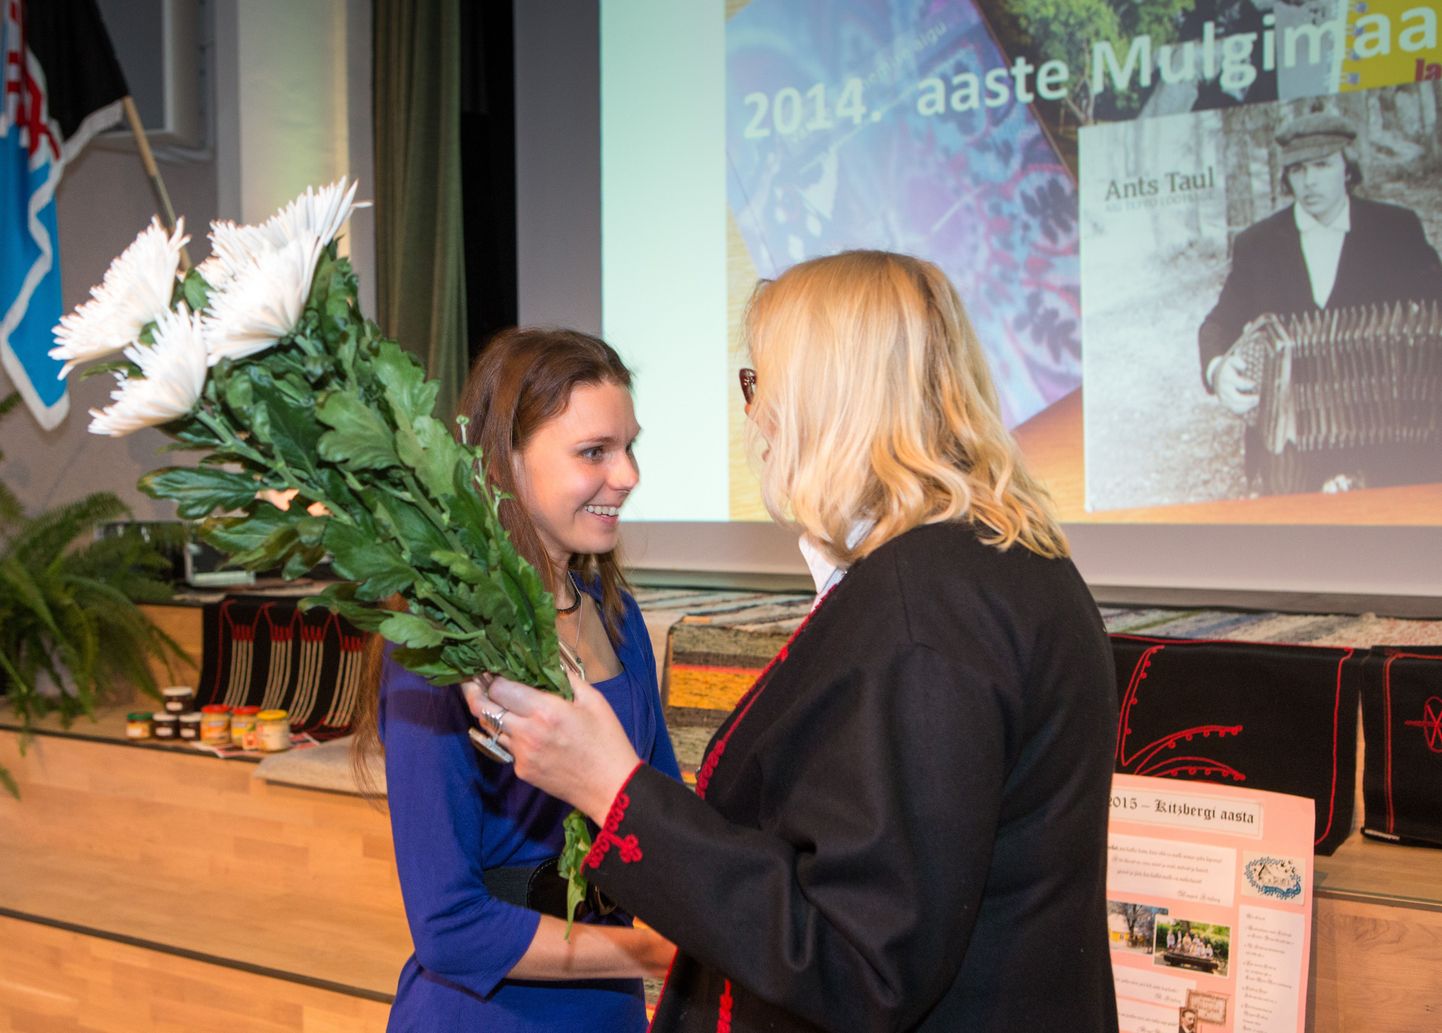 Mulgimaa uhkuse tiitli pälvinud Ants Tauli eest võttis tšeki vastu tema muusikust tütar Anu Taul. Selle ulatas talle koos lilledega Mulgi kultuuri instituudi juhataja Kaja Allilender.